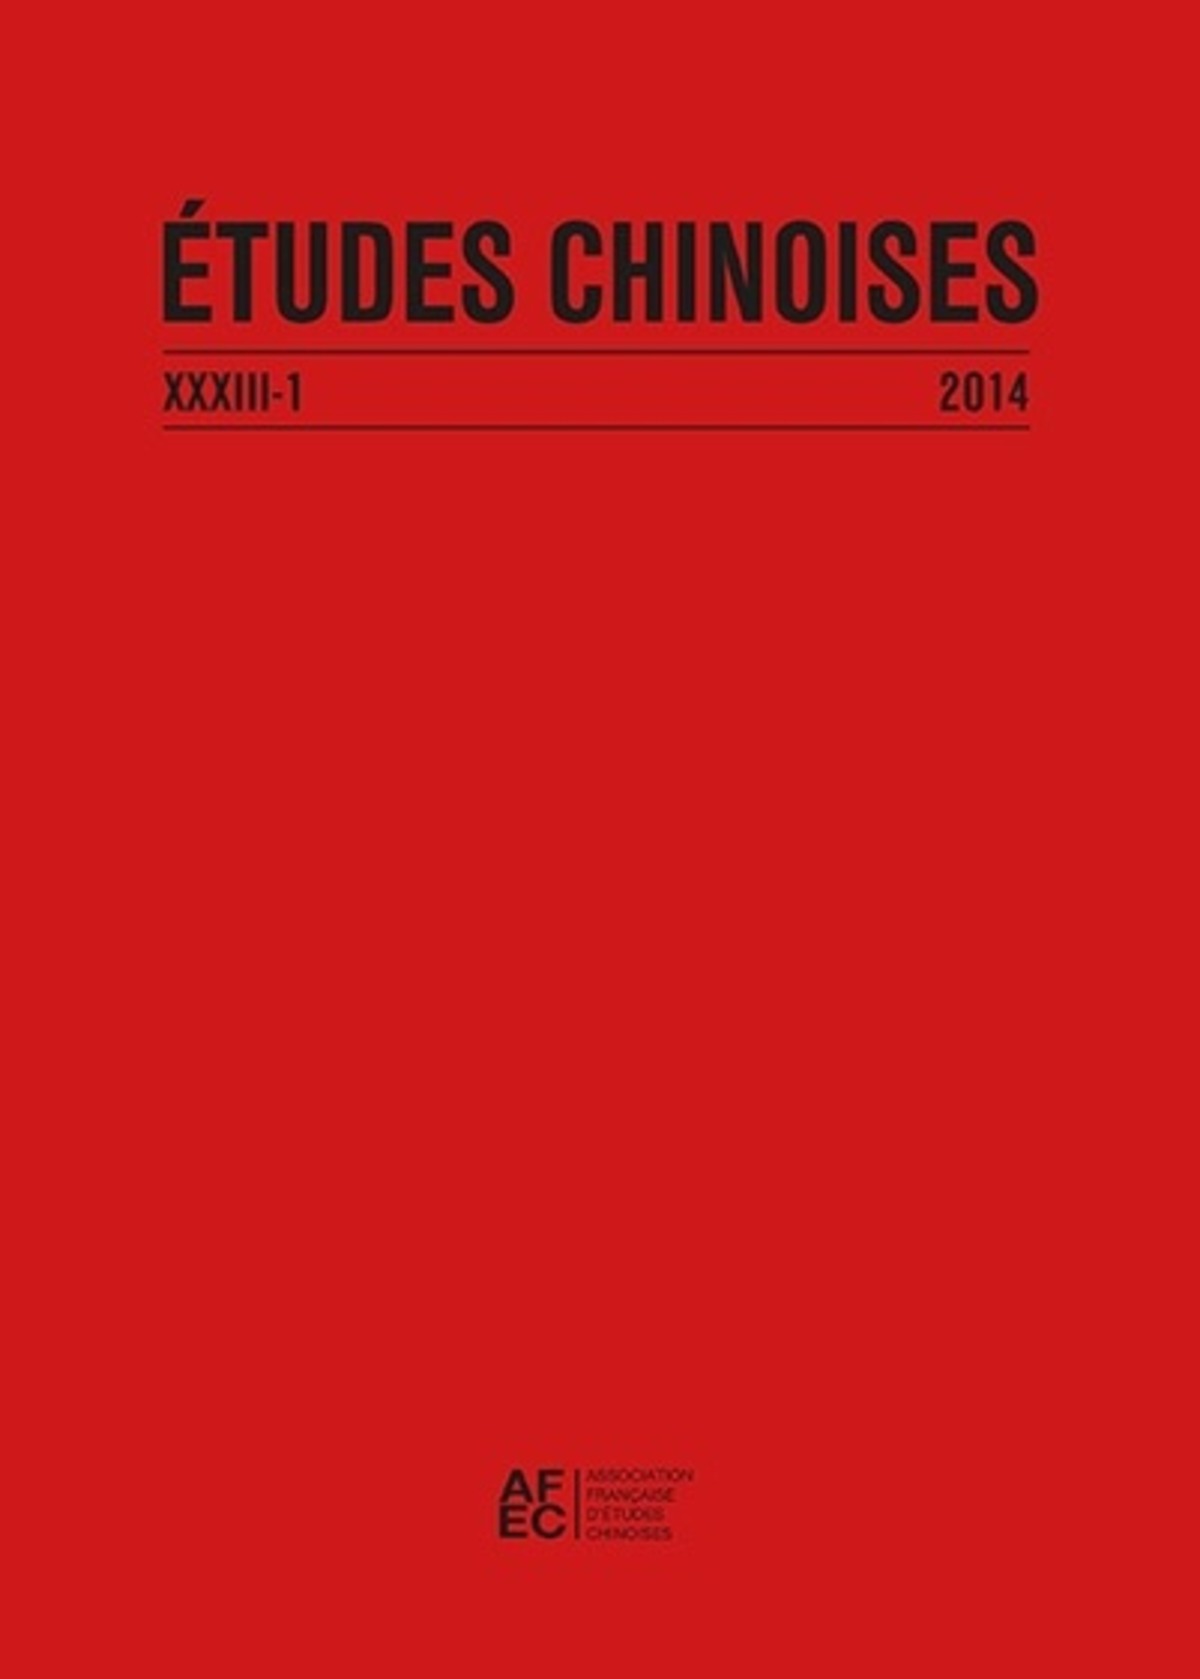 Études chinoises XXXIII-1 (2014)